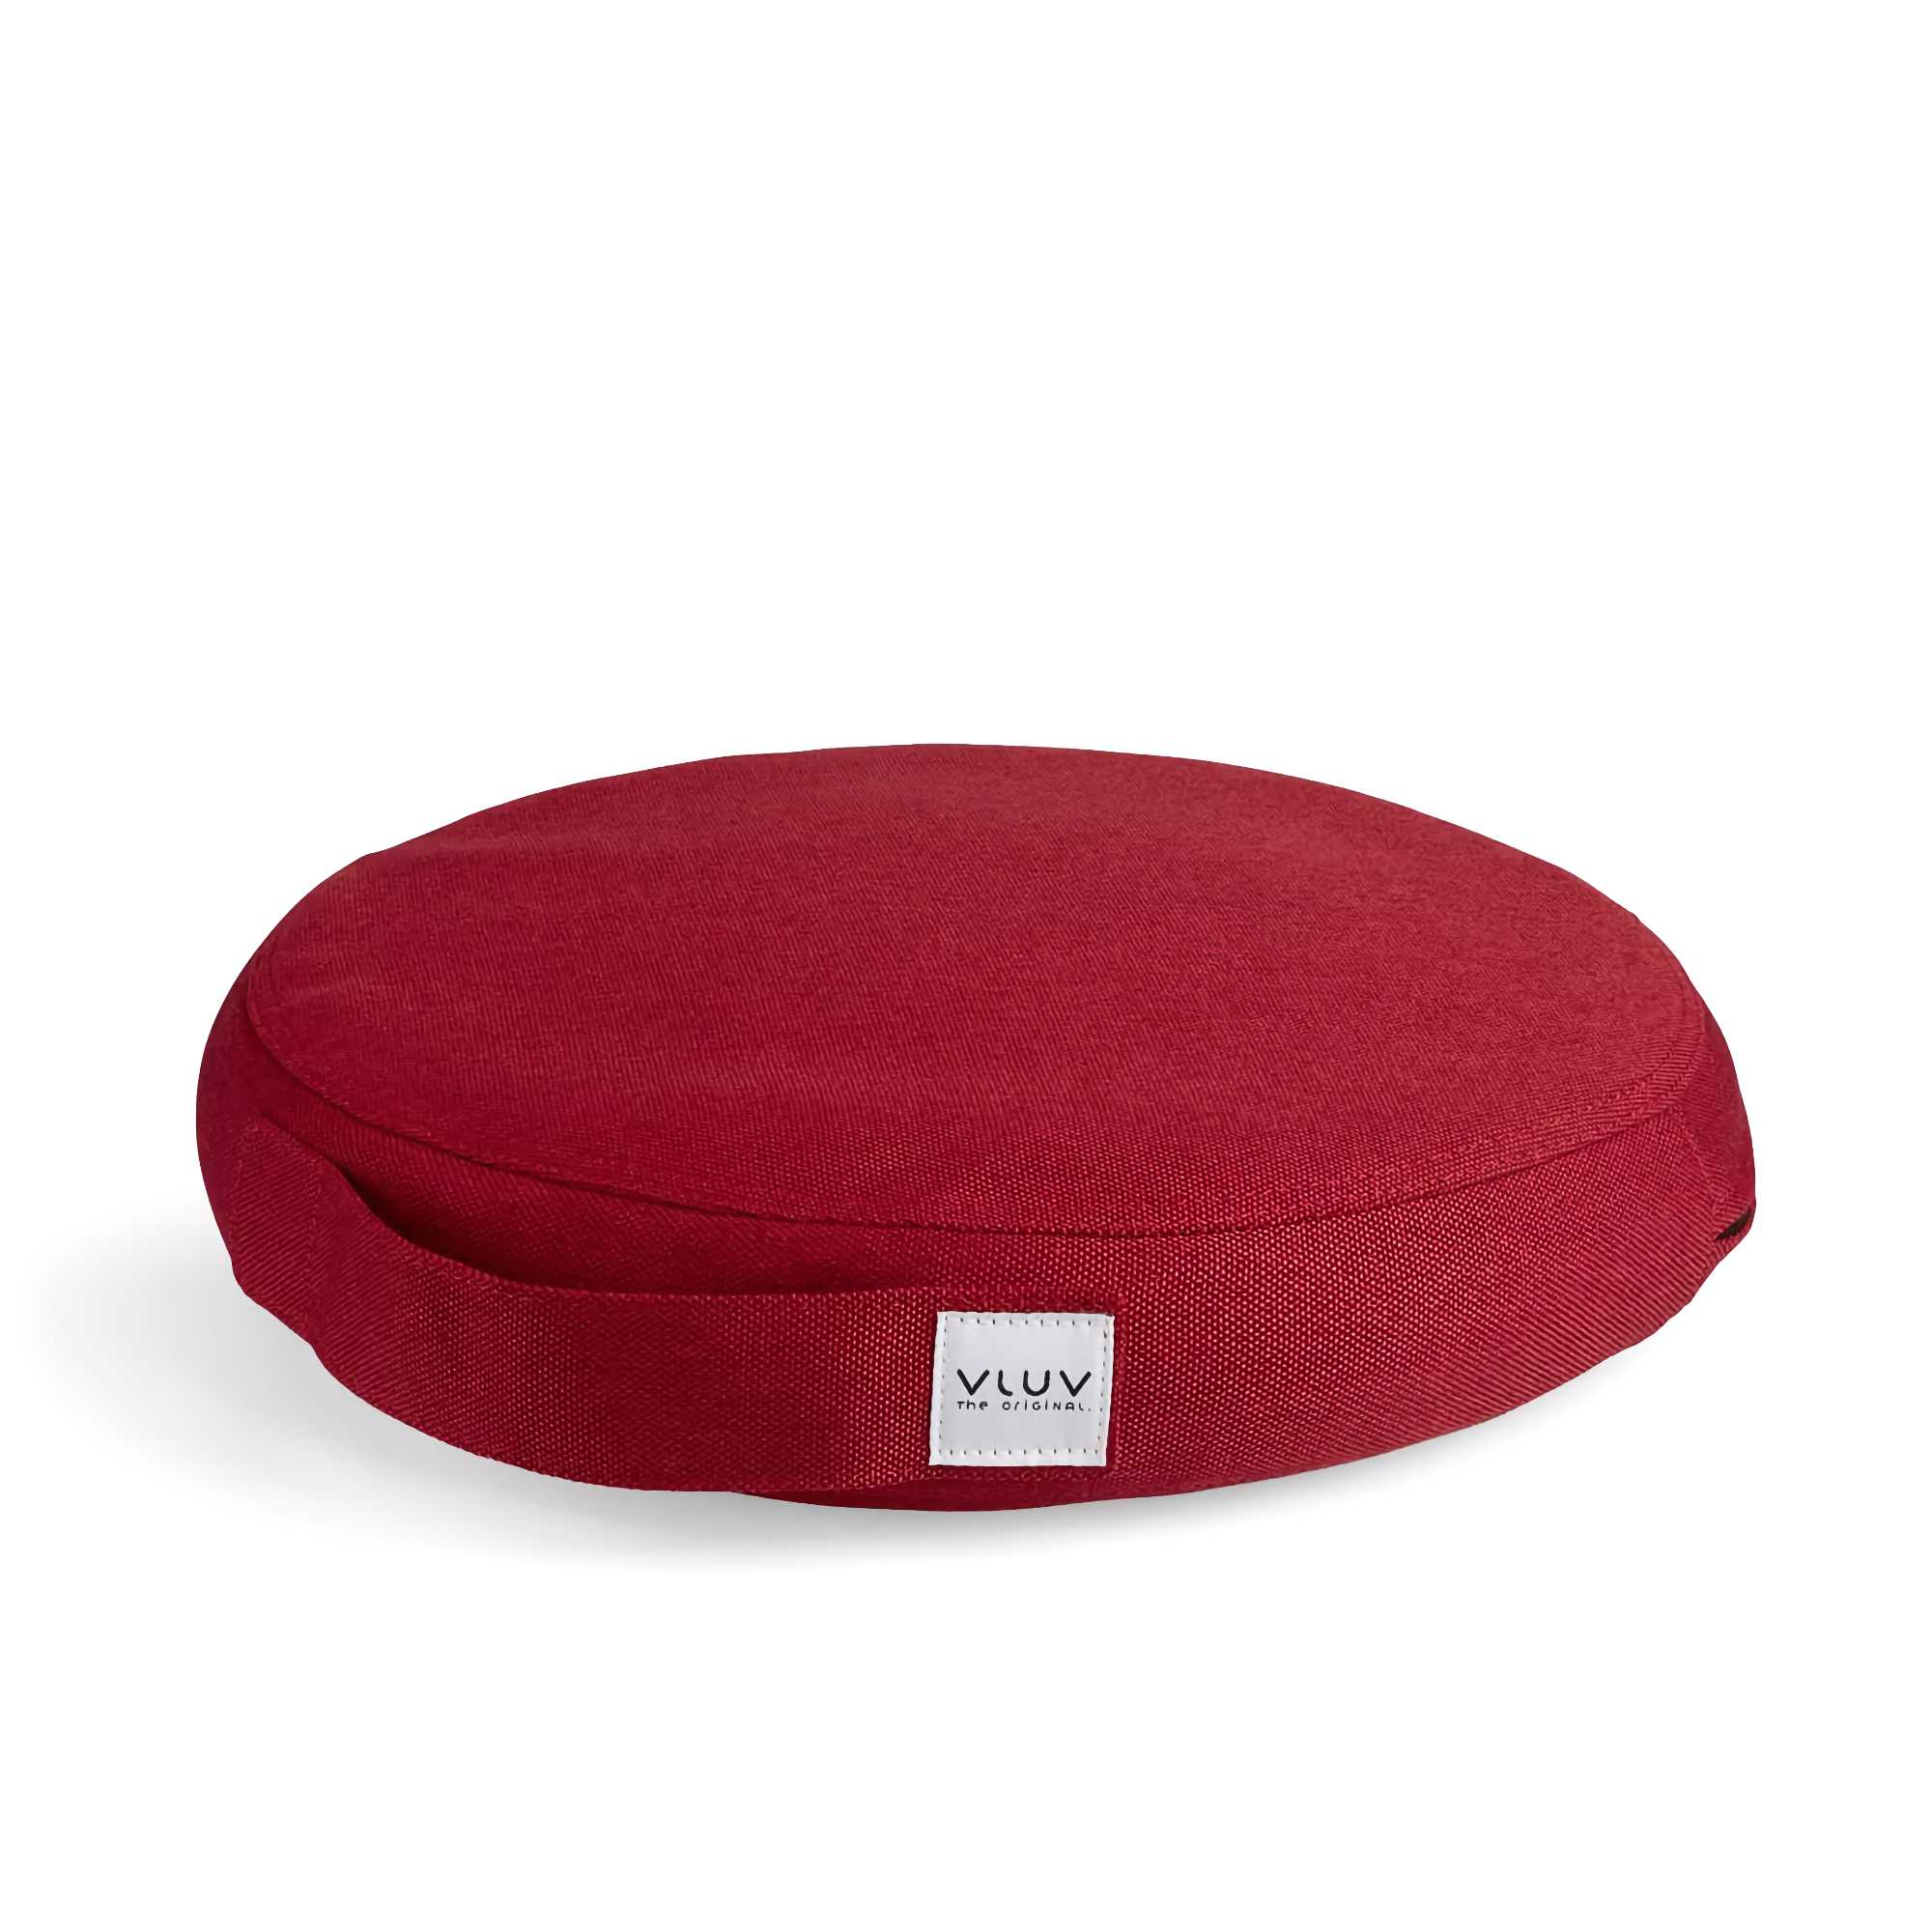 VLUV Pil & Ped balance cushion, ruby